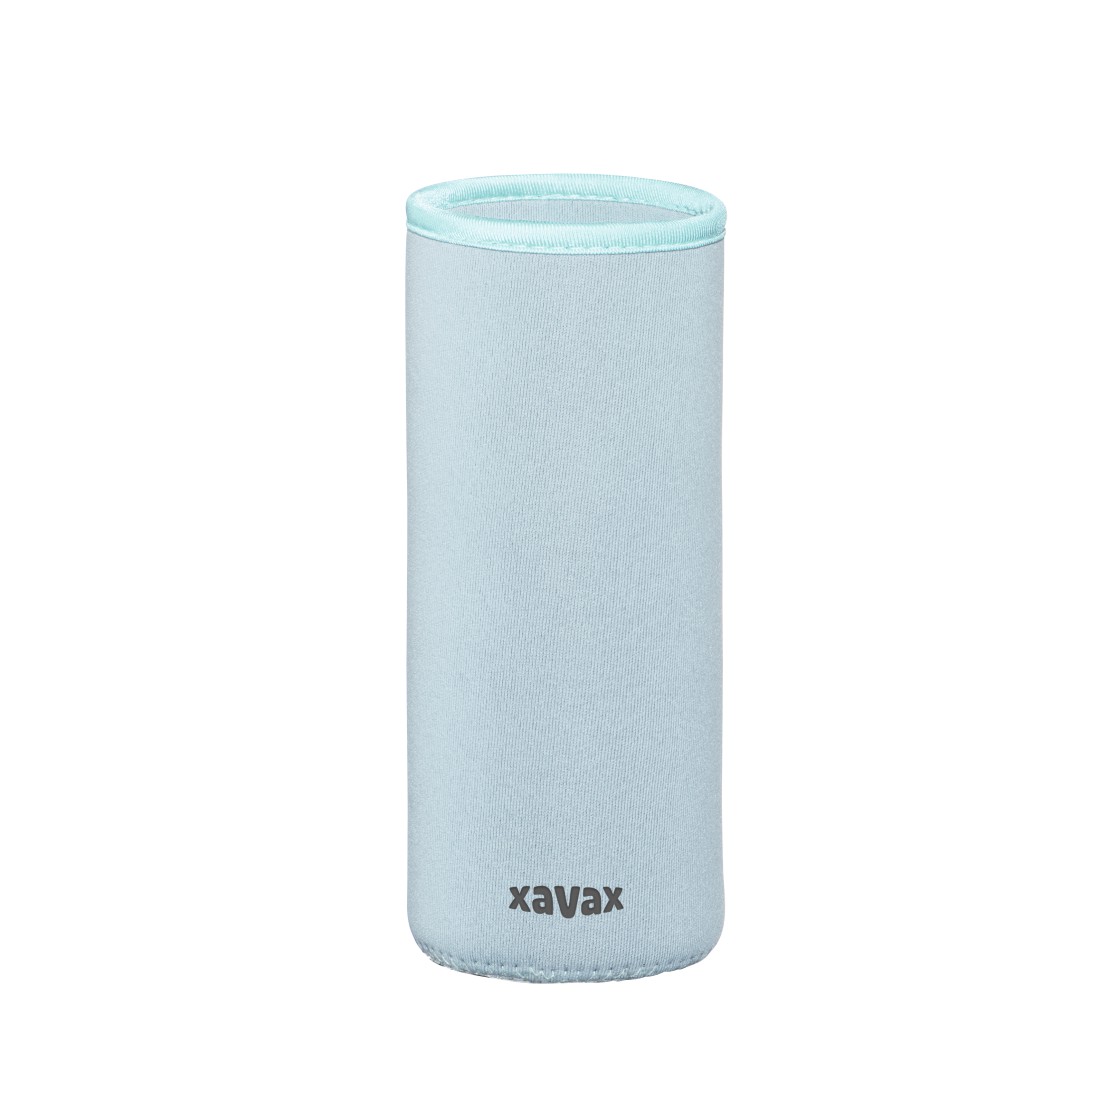 dex5 Druckfähiges Detail 5 - Xavax, Glasflasche, 450 ml, mit Schutzhülle, Einsatz, für Kohlensäure u. heiß/kalt